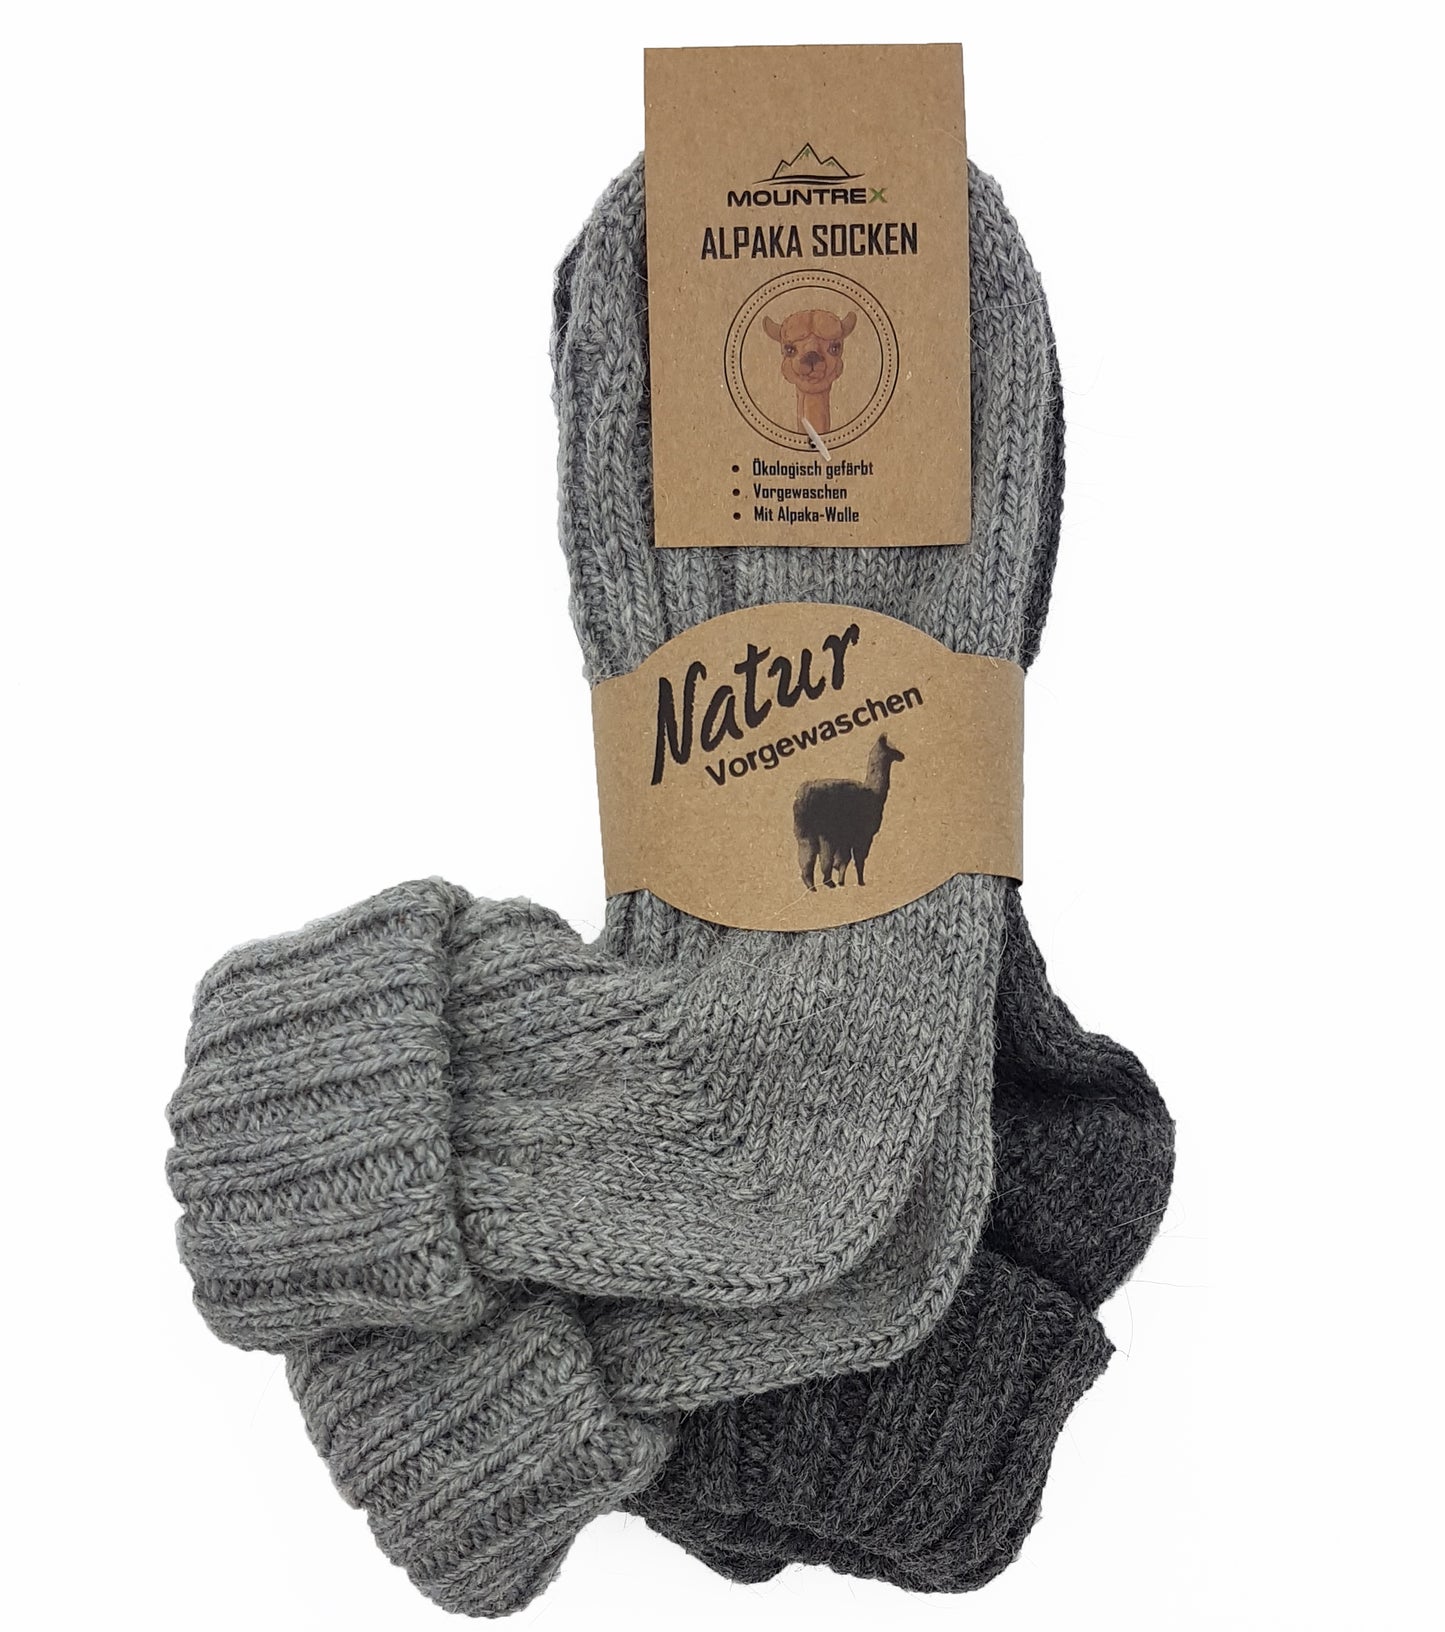 Alpaka Socken, Wollsocken (2 Paar) - Strick, mit Umschlag (Grau/Dunkelgrau)